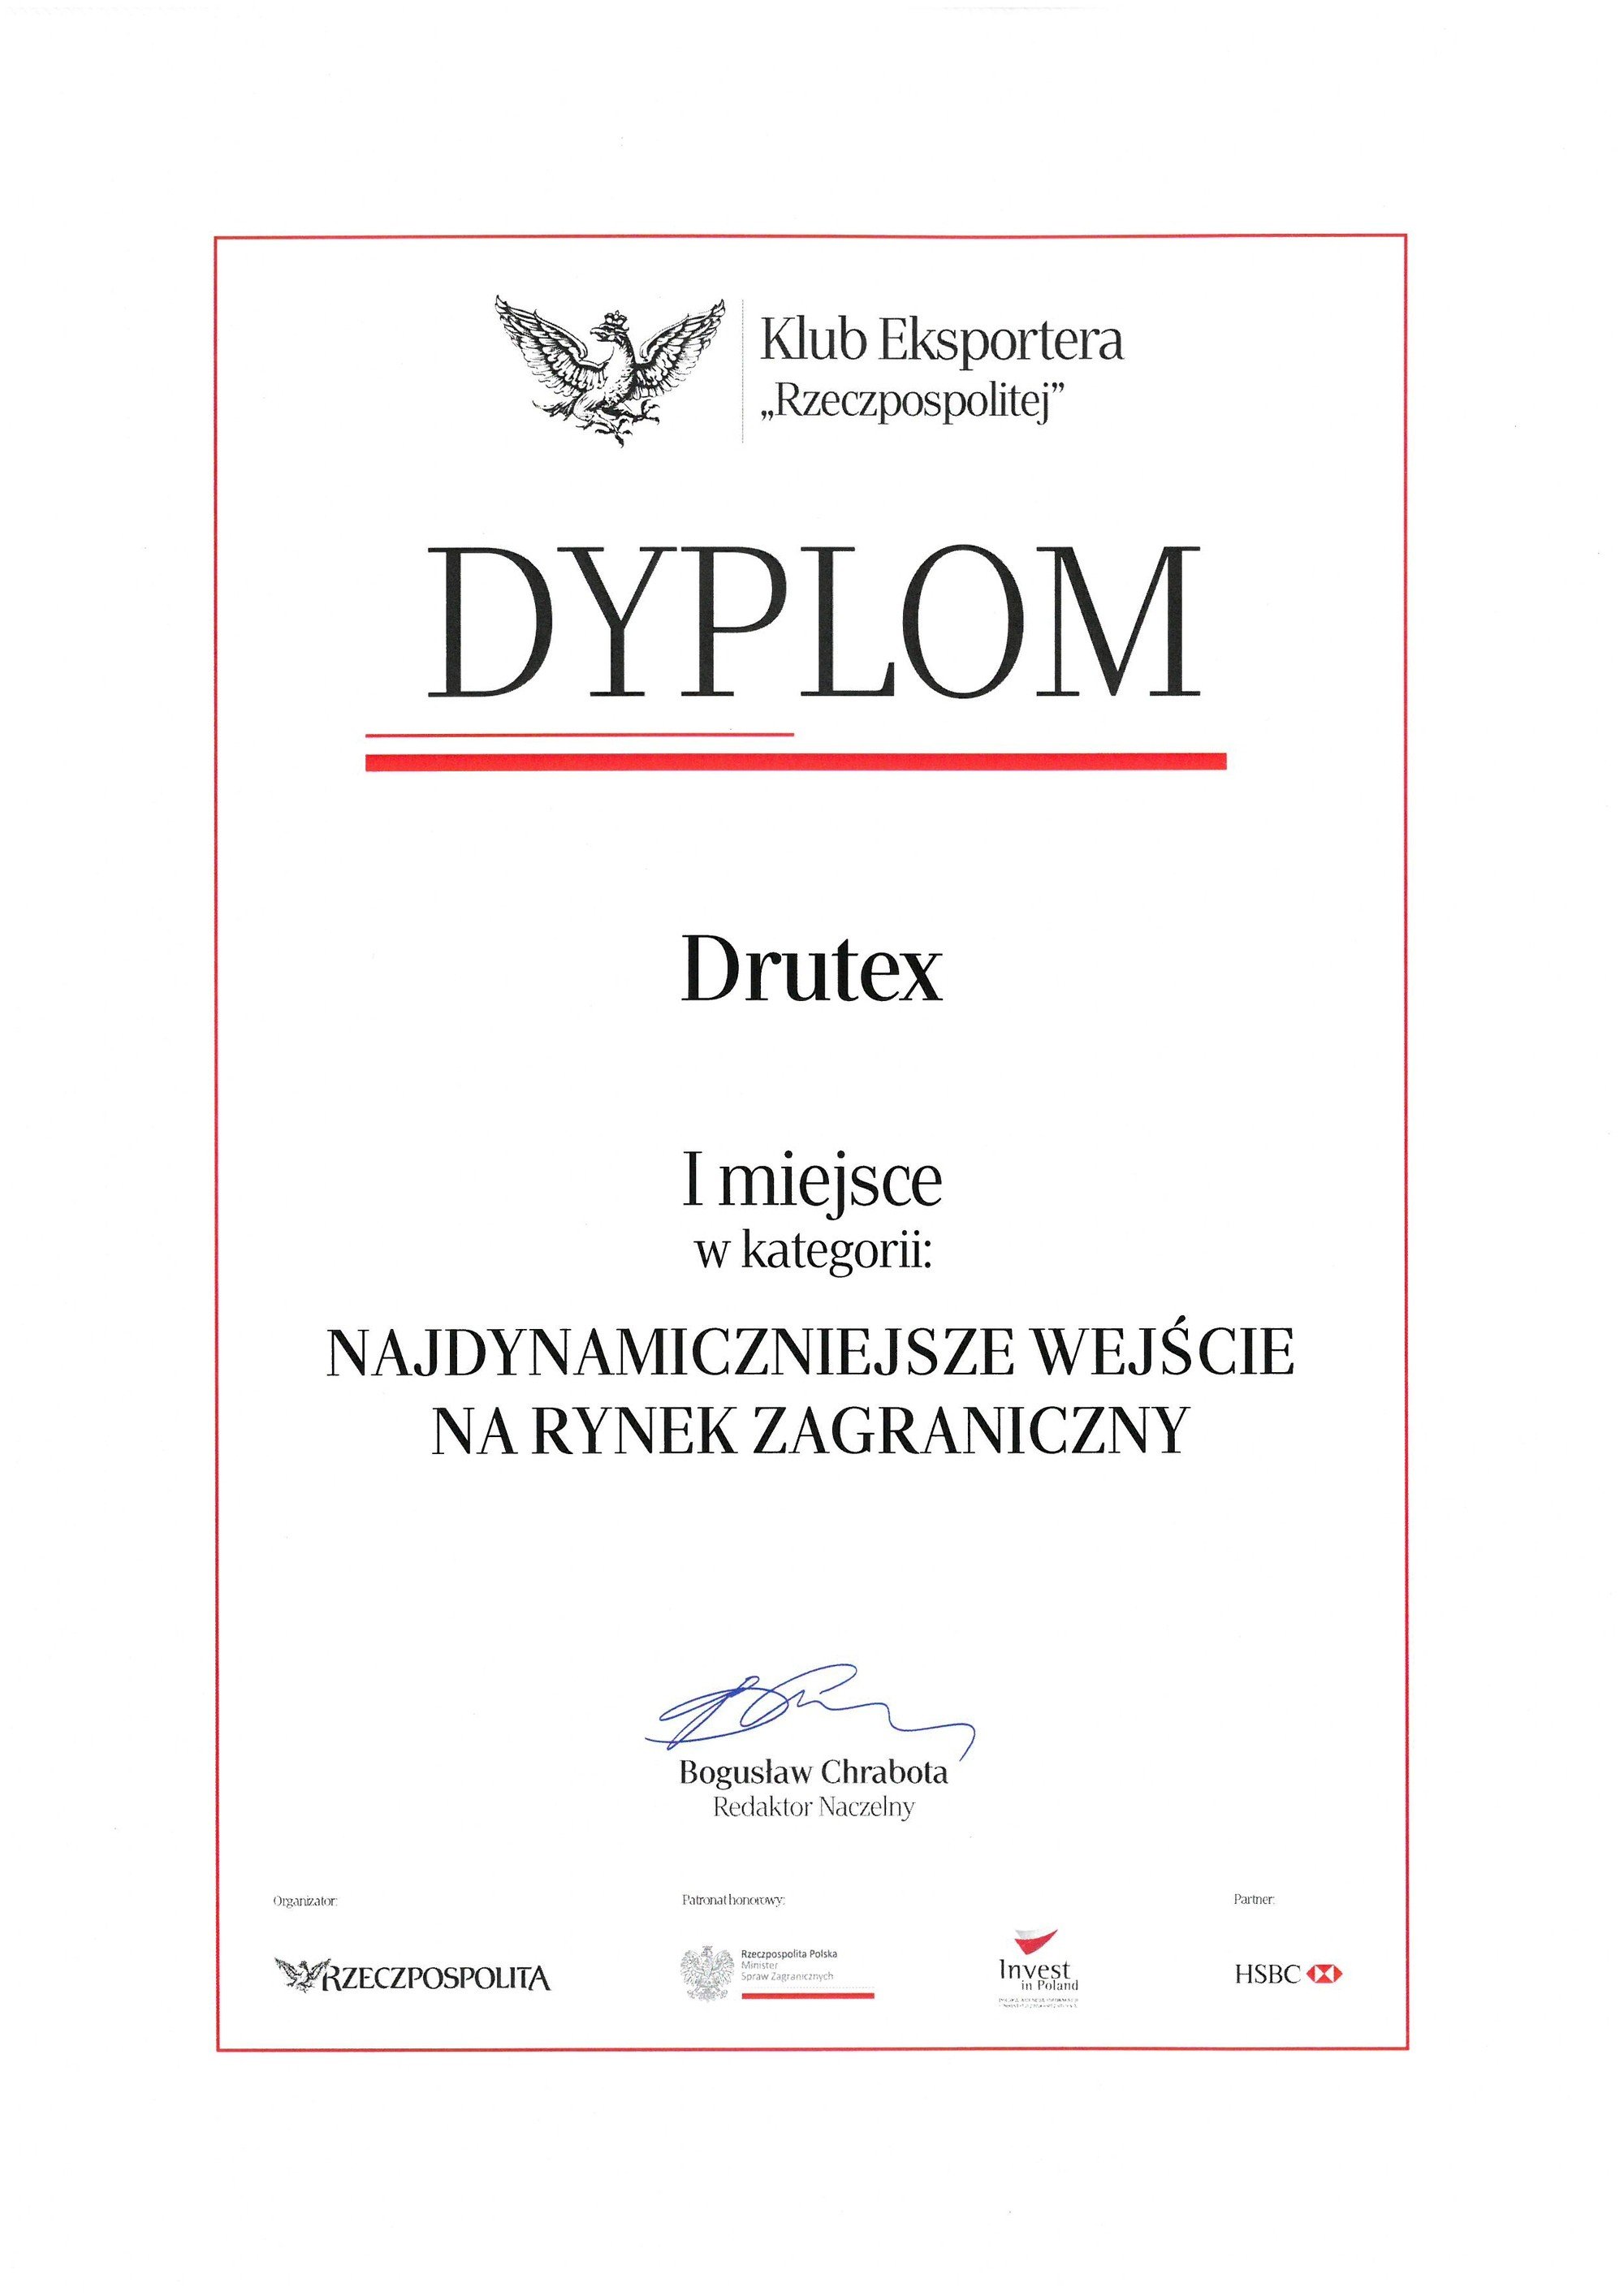 DRUTEX remporte le concours du journal Rzeczpospolita !